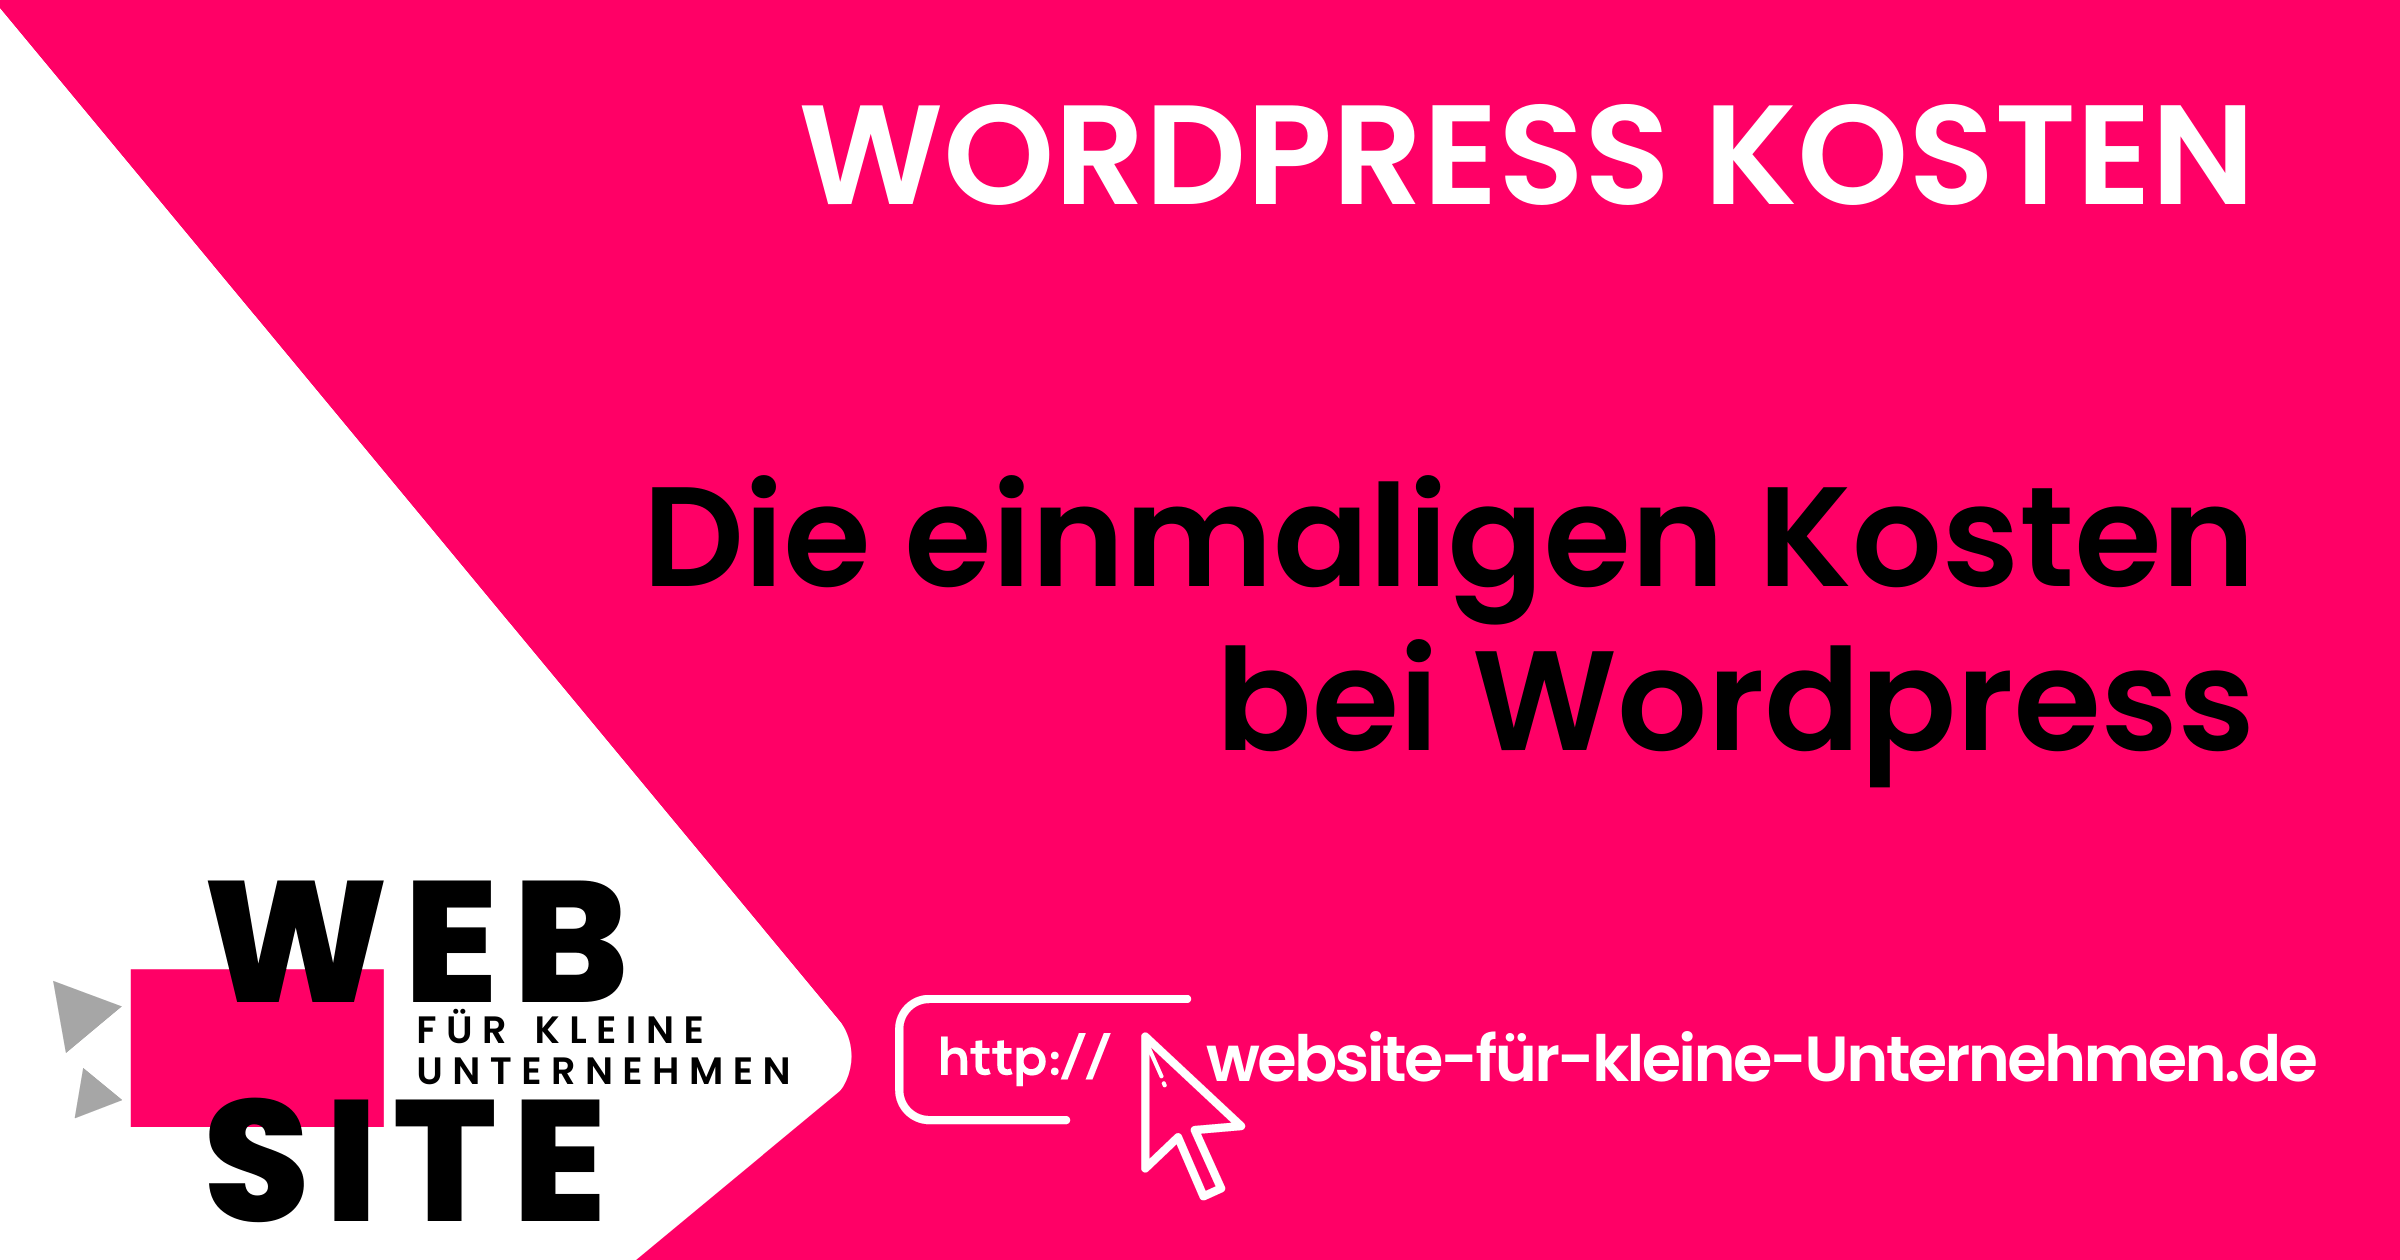 Wordpress Kosten - Website für kleine Unternehmen - Einmalige Kosten WordPress Seite